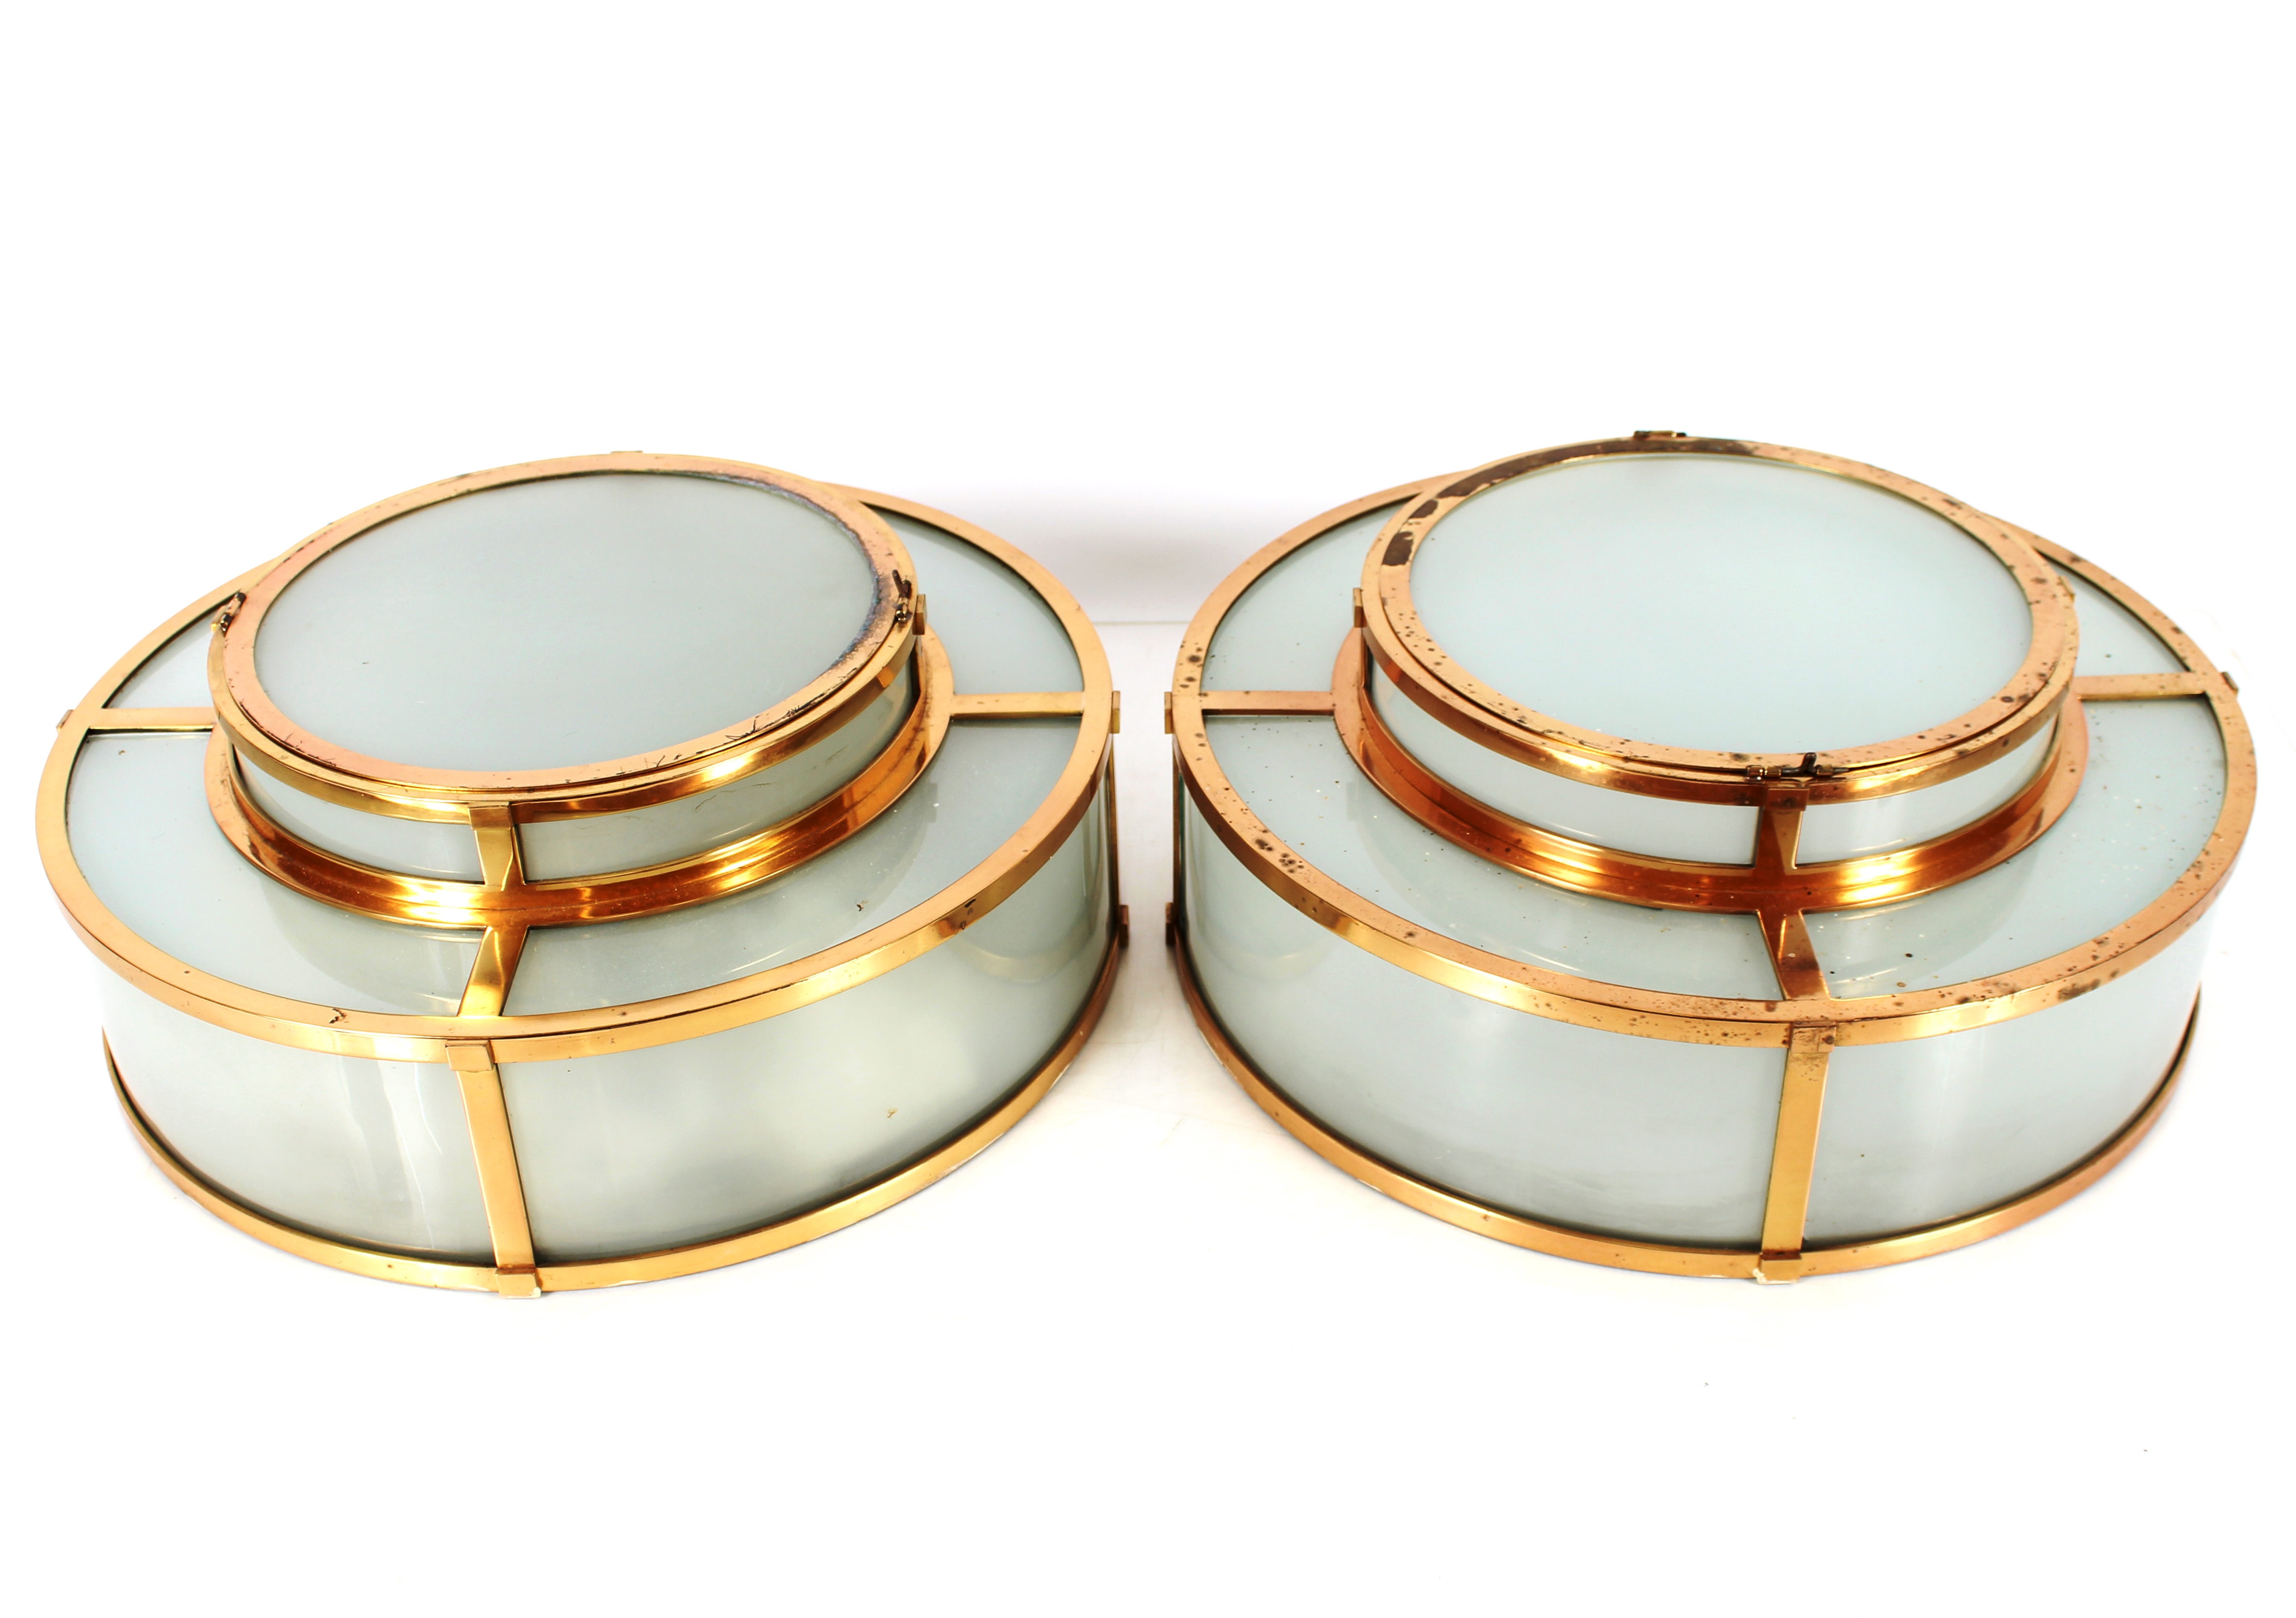 A pair of brass and opaque glass Art Deco design circular ceiling lights, 46cm dia.